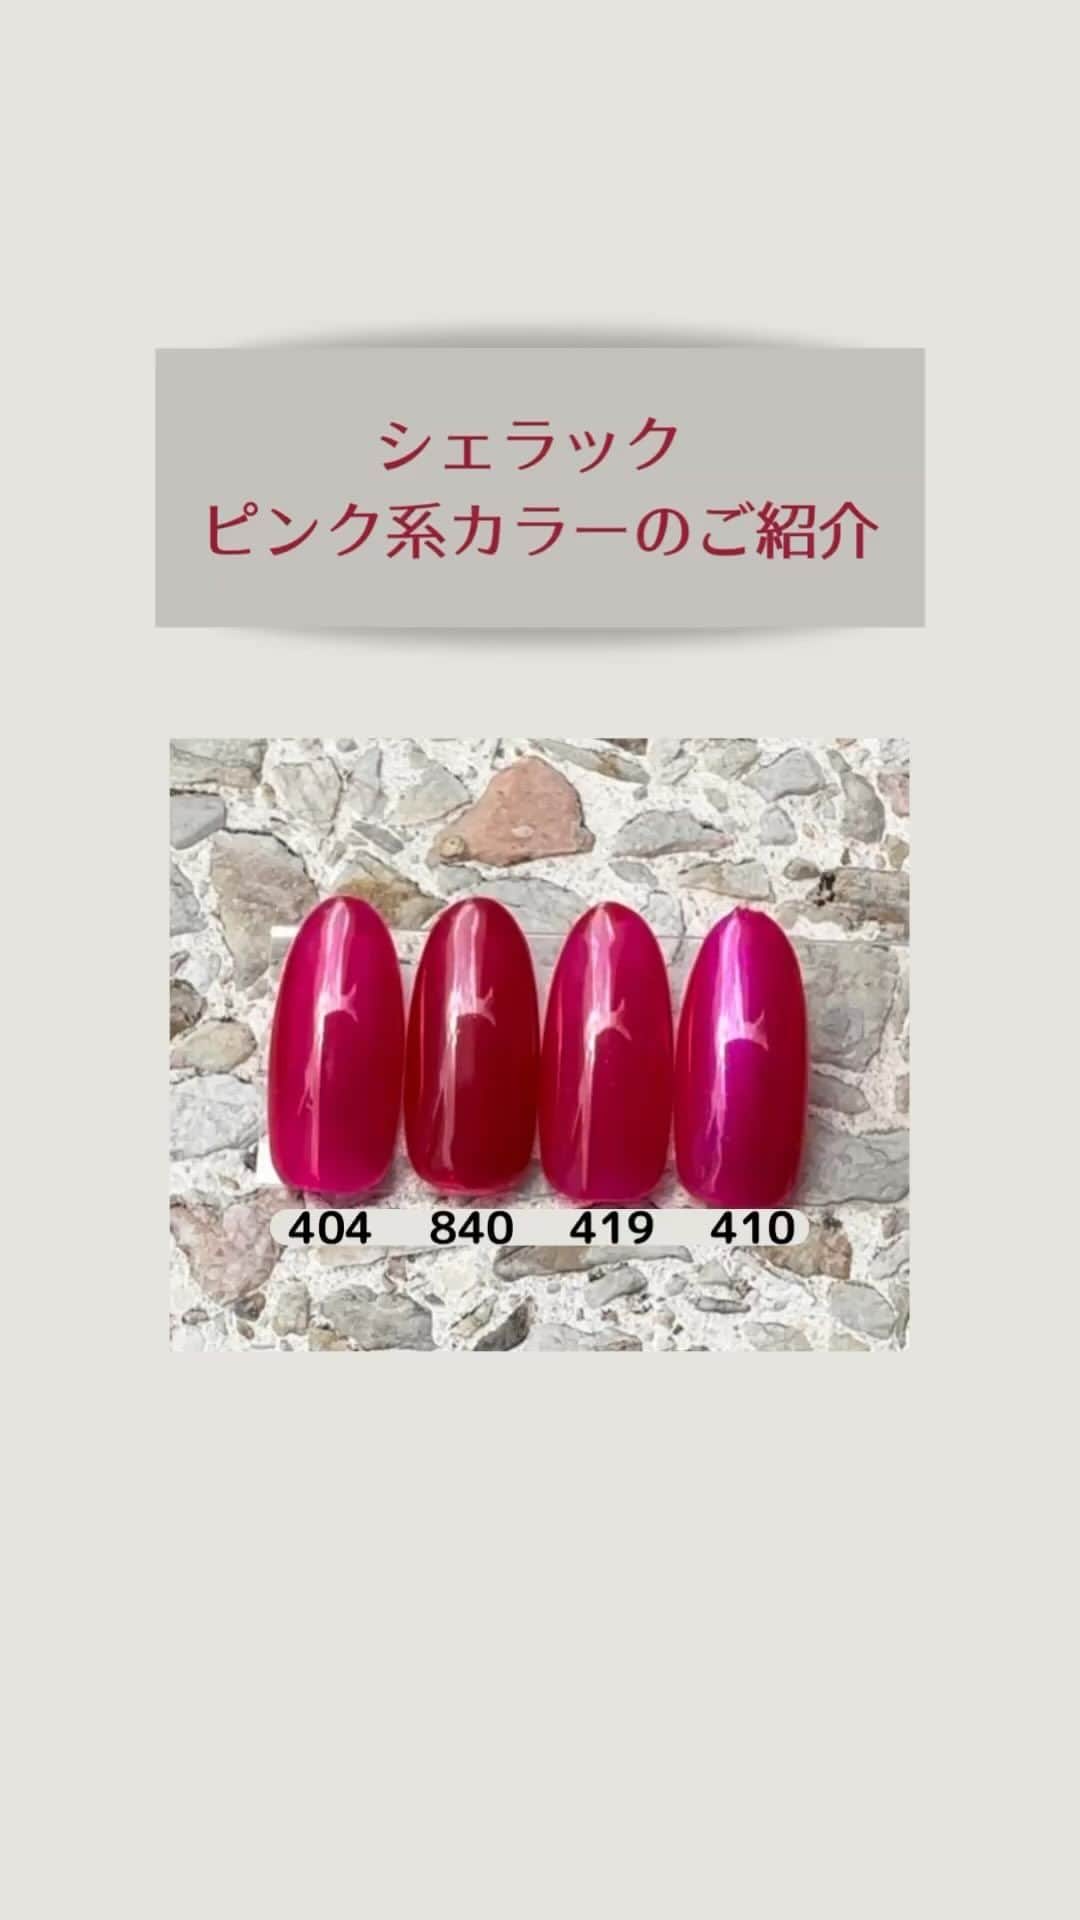 CND日本公式アカウントのインスタグラム：「. シェラックカラー ピンク系4色をご紹介します🩷  404 Pink Leggings (シアー) 840 Rose Brocade(シアーマット) 419 Ripe Guava(シアーマット)  410 Ecstasy (シアーパール)  お気に入りのカラーは見つかりましたか？  ぜひご参考にご覧下さい😊  ※実際のカラーと異なる場合がございます。ご了承ください。  シェラックは下記の販売店様でお取扱いしております。 @nailshoptat @nailpartner @naillabojp @life_beauty_pro ※別途会員登録が必要な場合がございます ※直接各店へお問い合わせください  #cnd #cndworld #shellac #cndshellac #シェラック #シェラックネイル #爪を削らない #爪に優しい #ネイル #タカラベルモント #シェラックカラー」